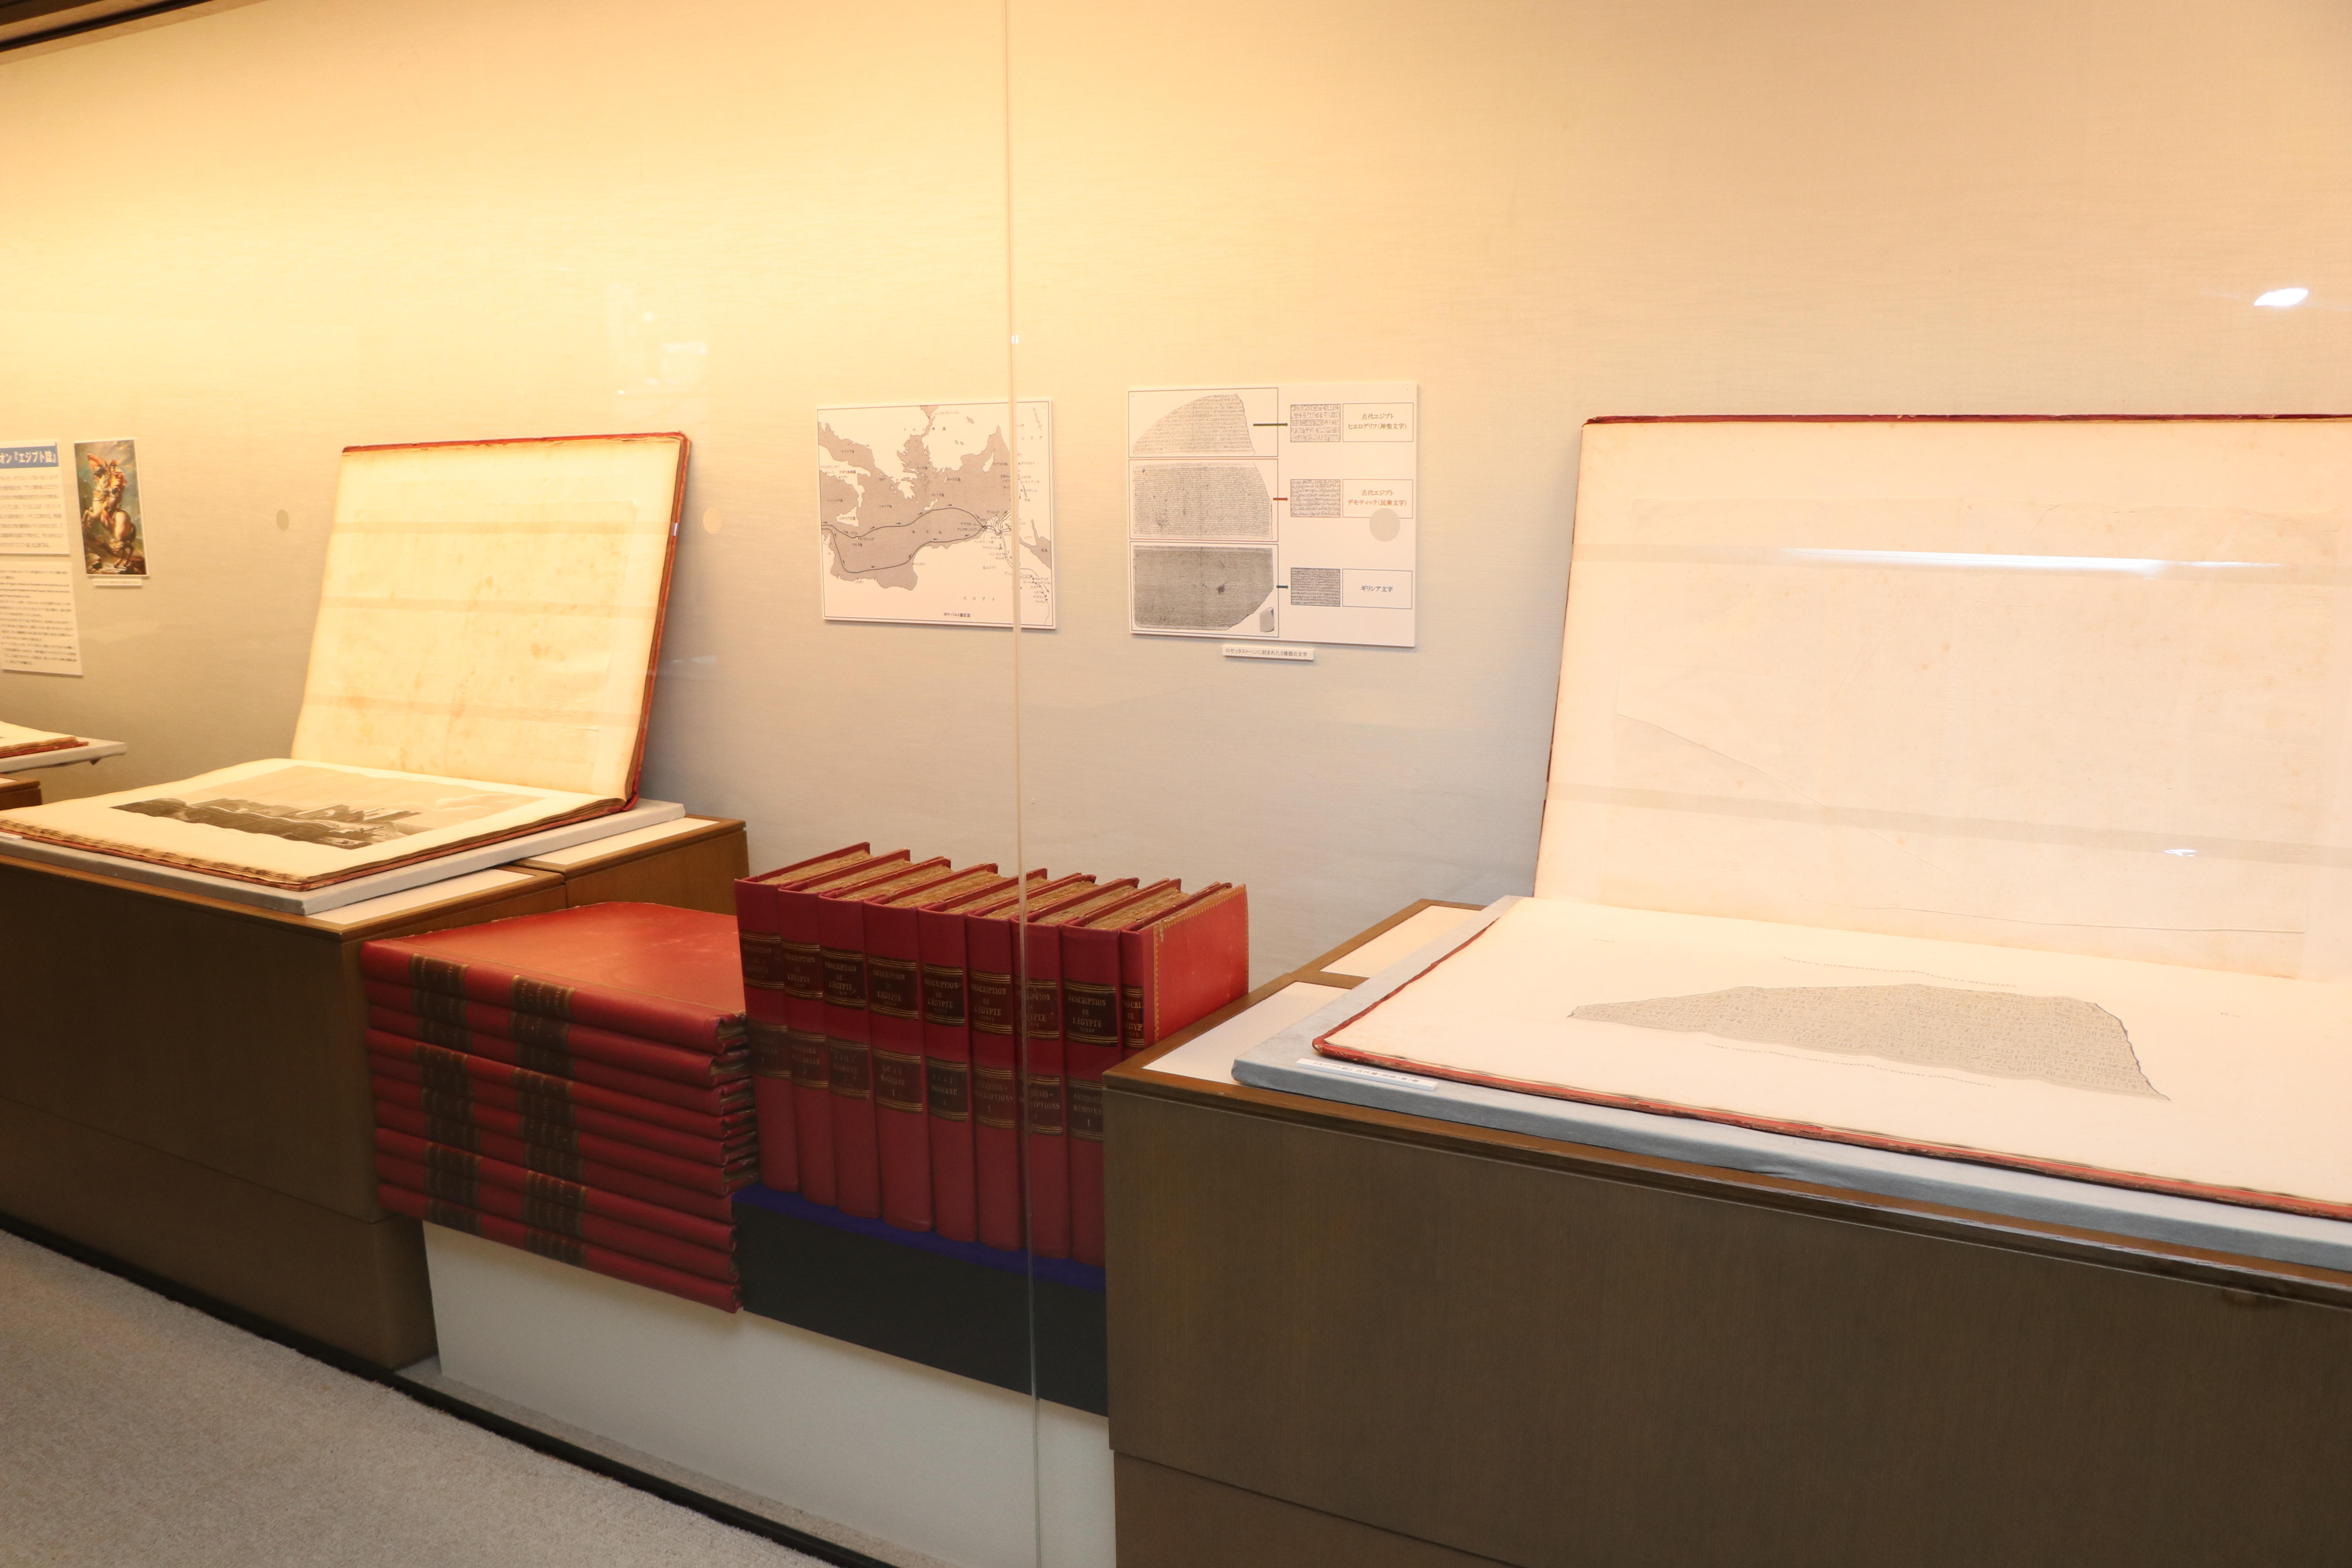 聖徳大学が「ナポレオンが見たエジプト×ペリーが見た日本」展を開催中 -- 『エジプト誌』や『日本遠征記』などの古典資料を12月21日まで一般公開